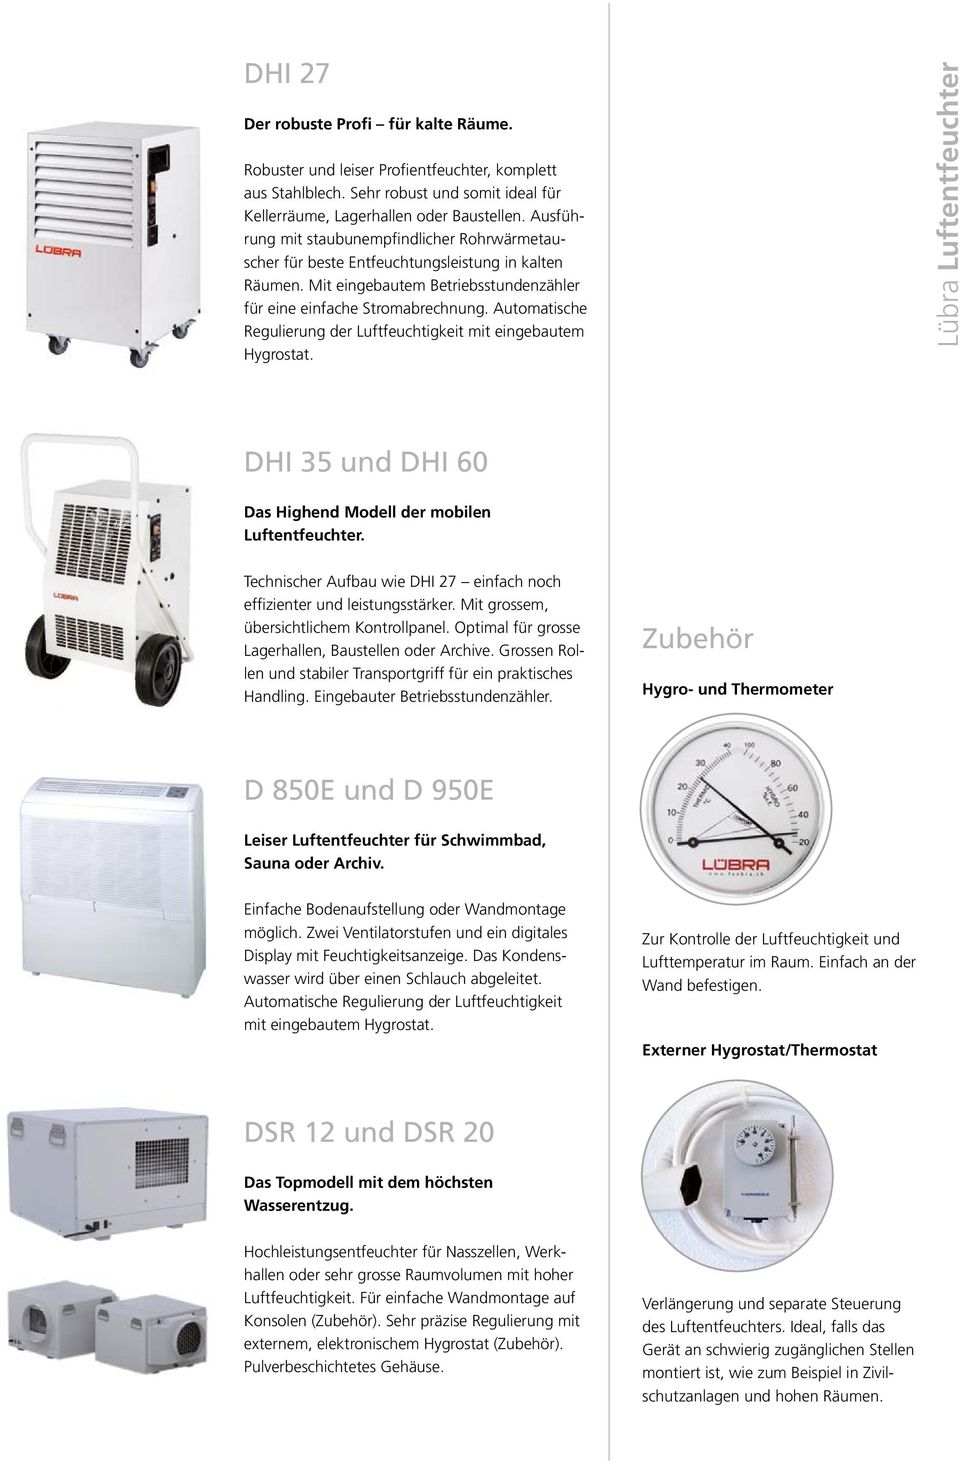 Automatische Regulierung der Luftfeuchtigkeit mit eingebautem Hygrostat. Lübra Luftentfeuchter DHI 35 und DHI 60 Das Highend Modell der mobilen Luftentfeuchter.